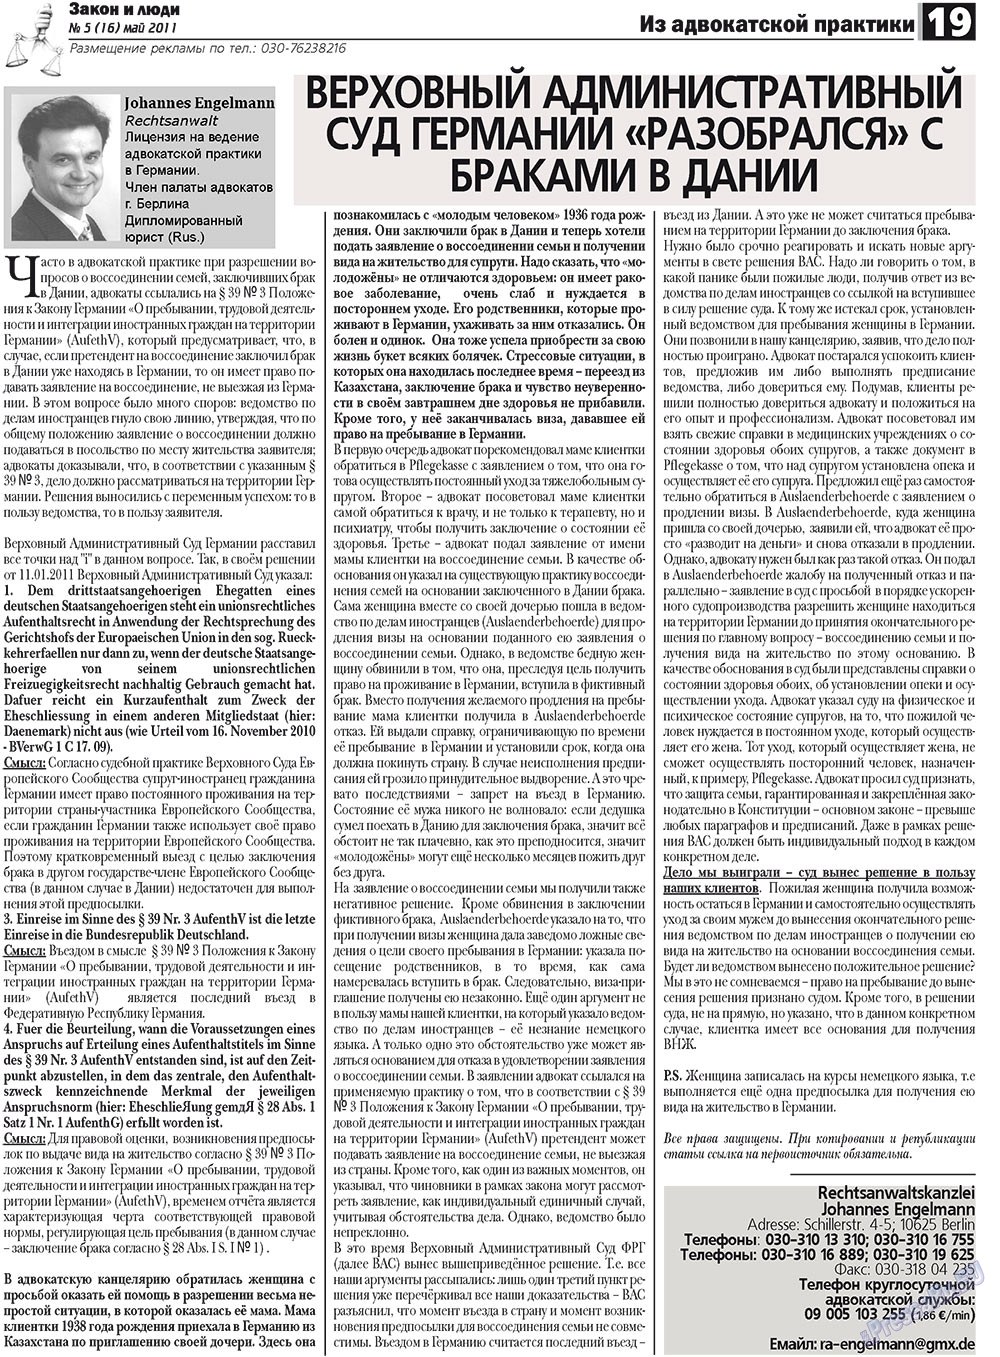 Закон и люди, газета. 2011 №5 стр.19